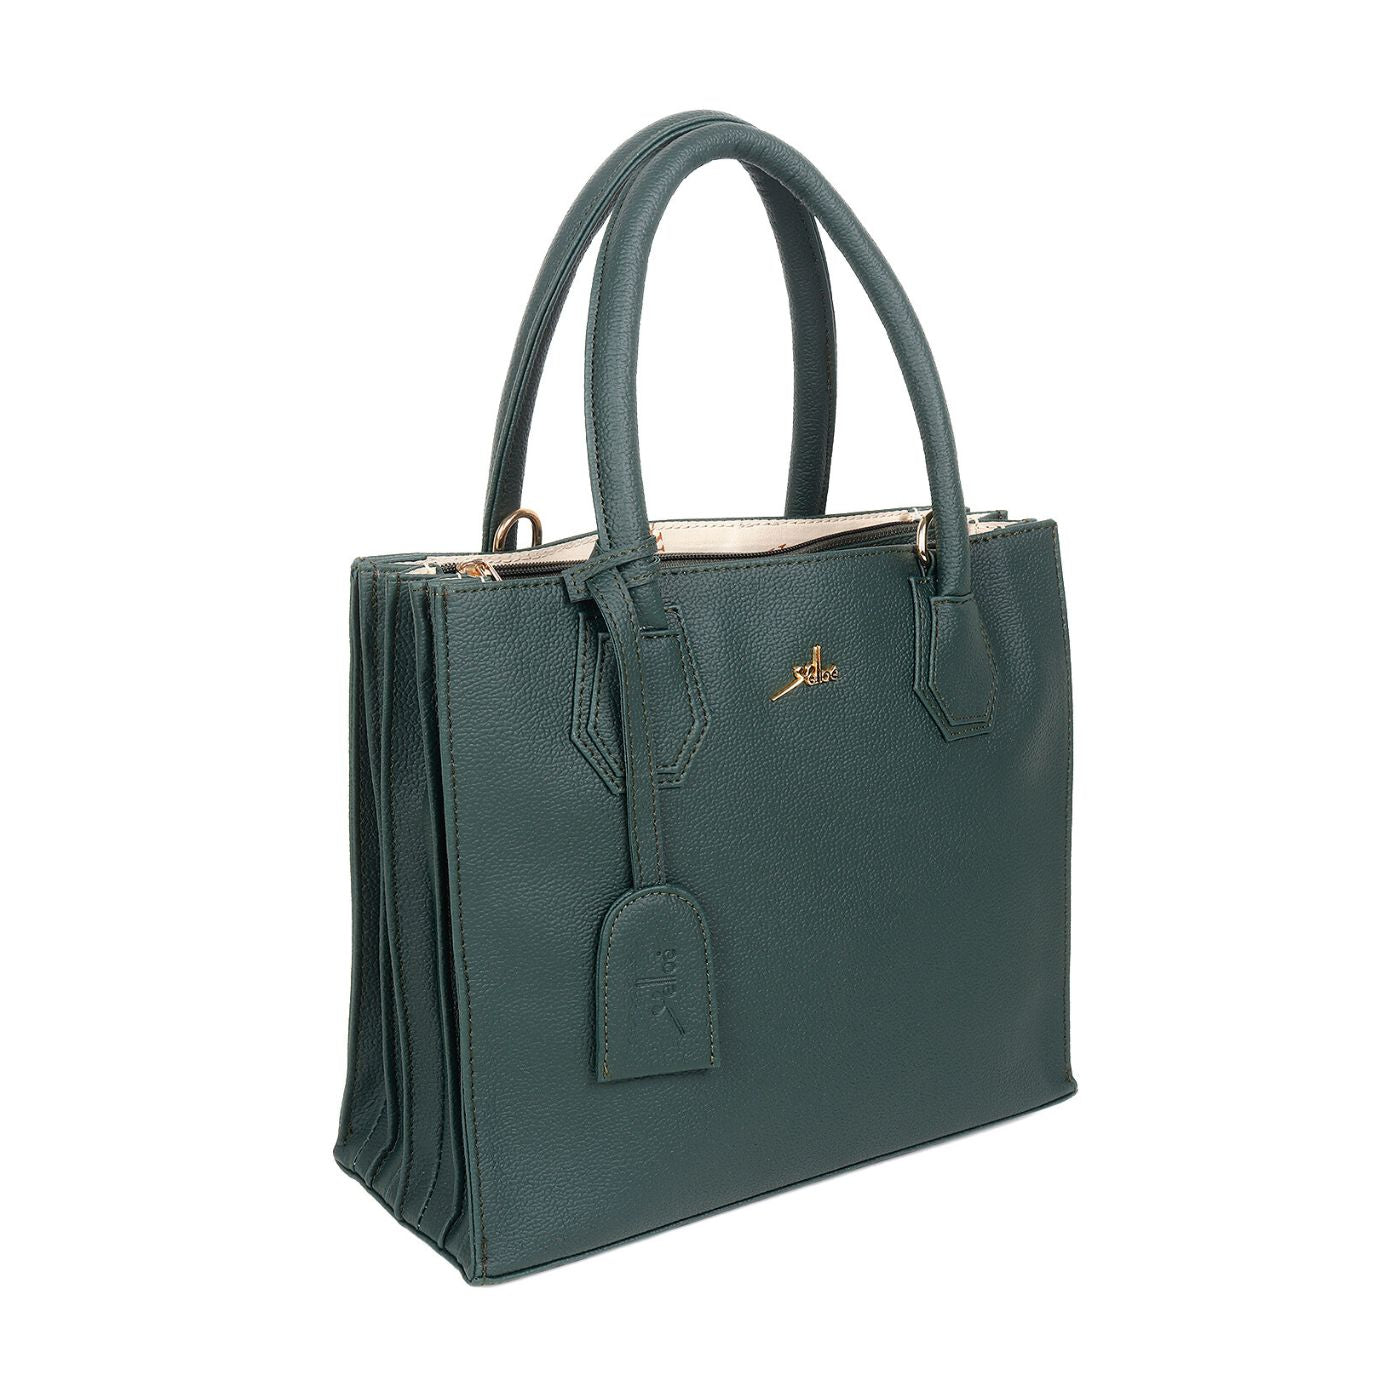 Satchel Handbag multi compartment Green